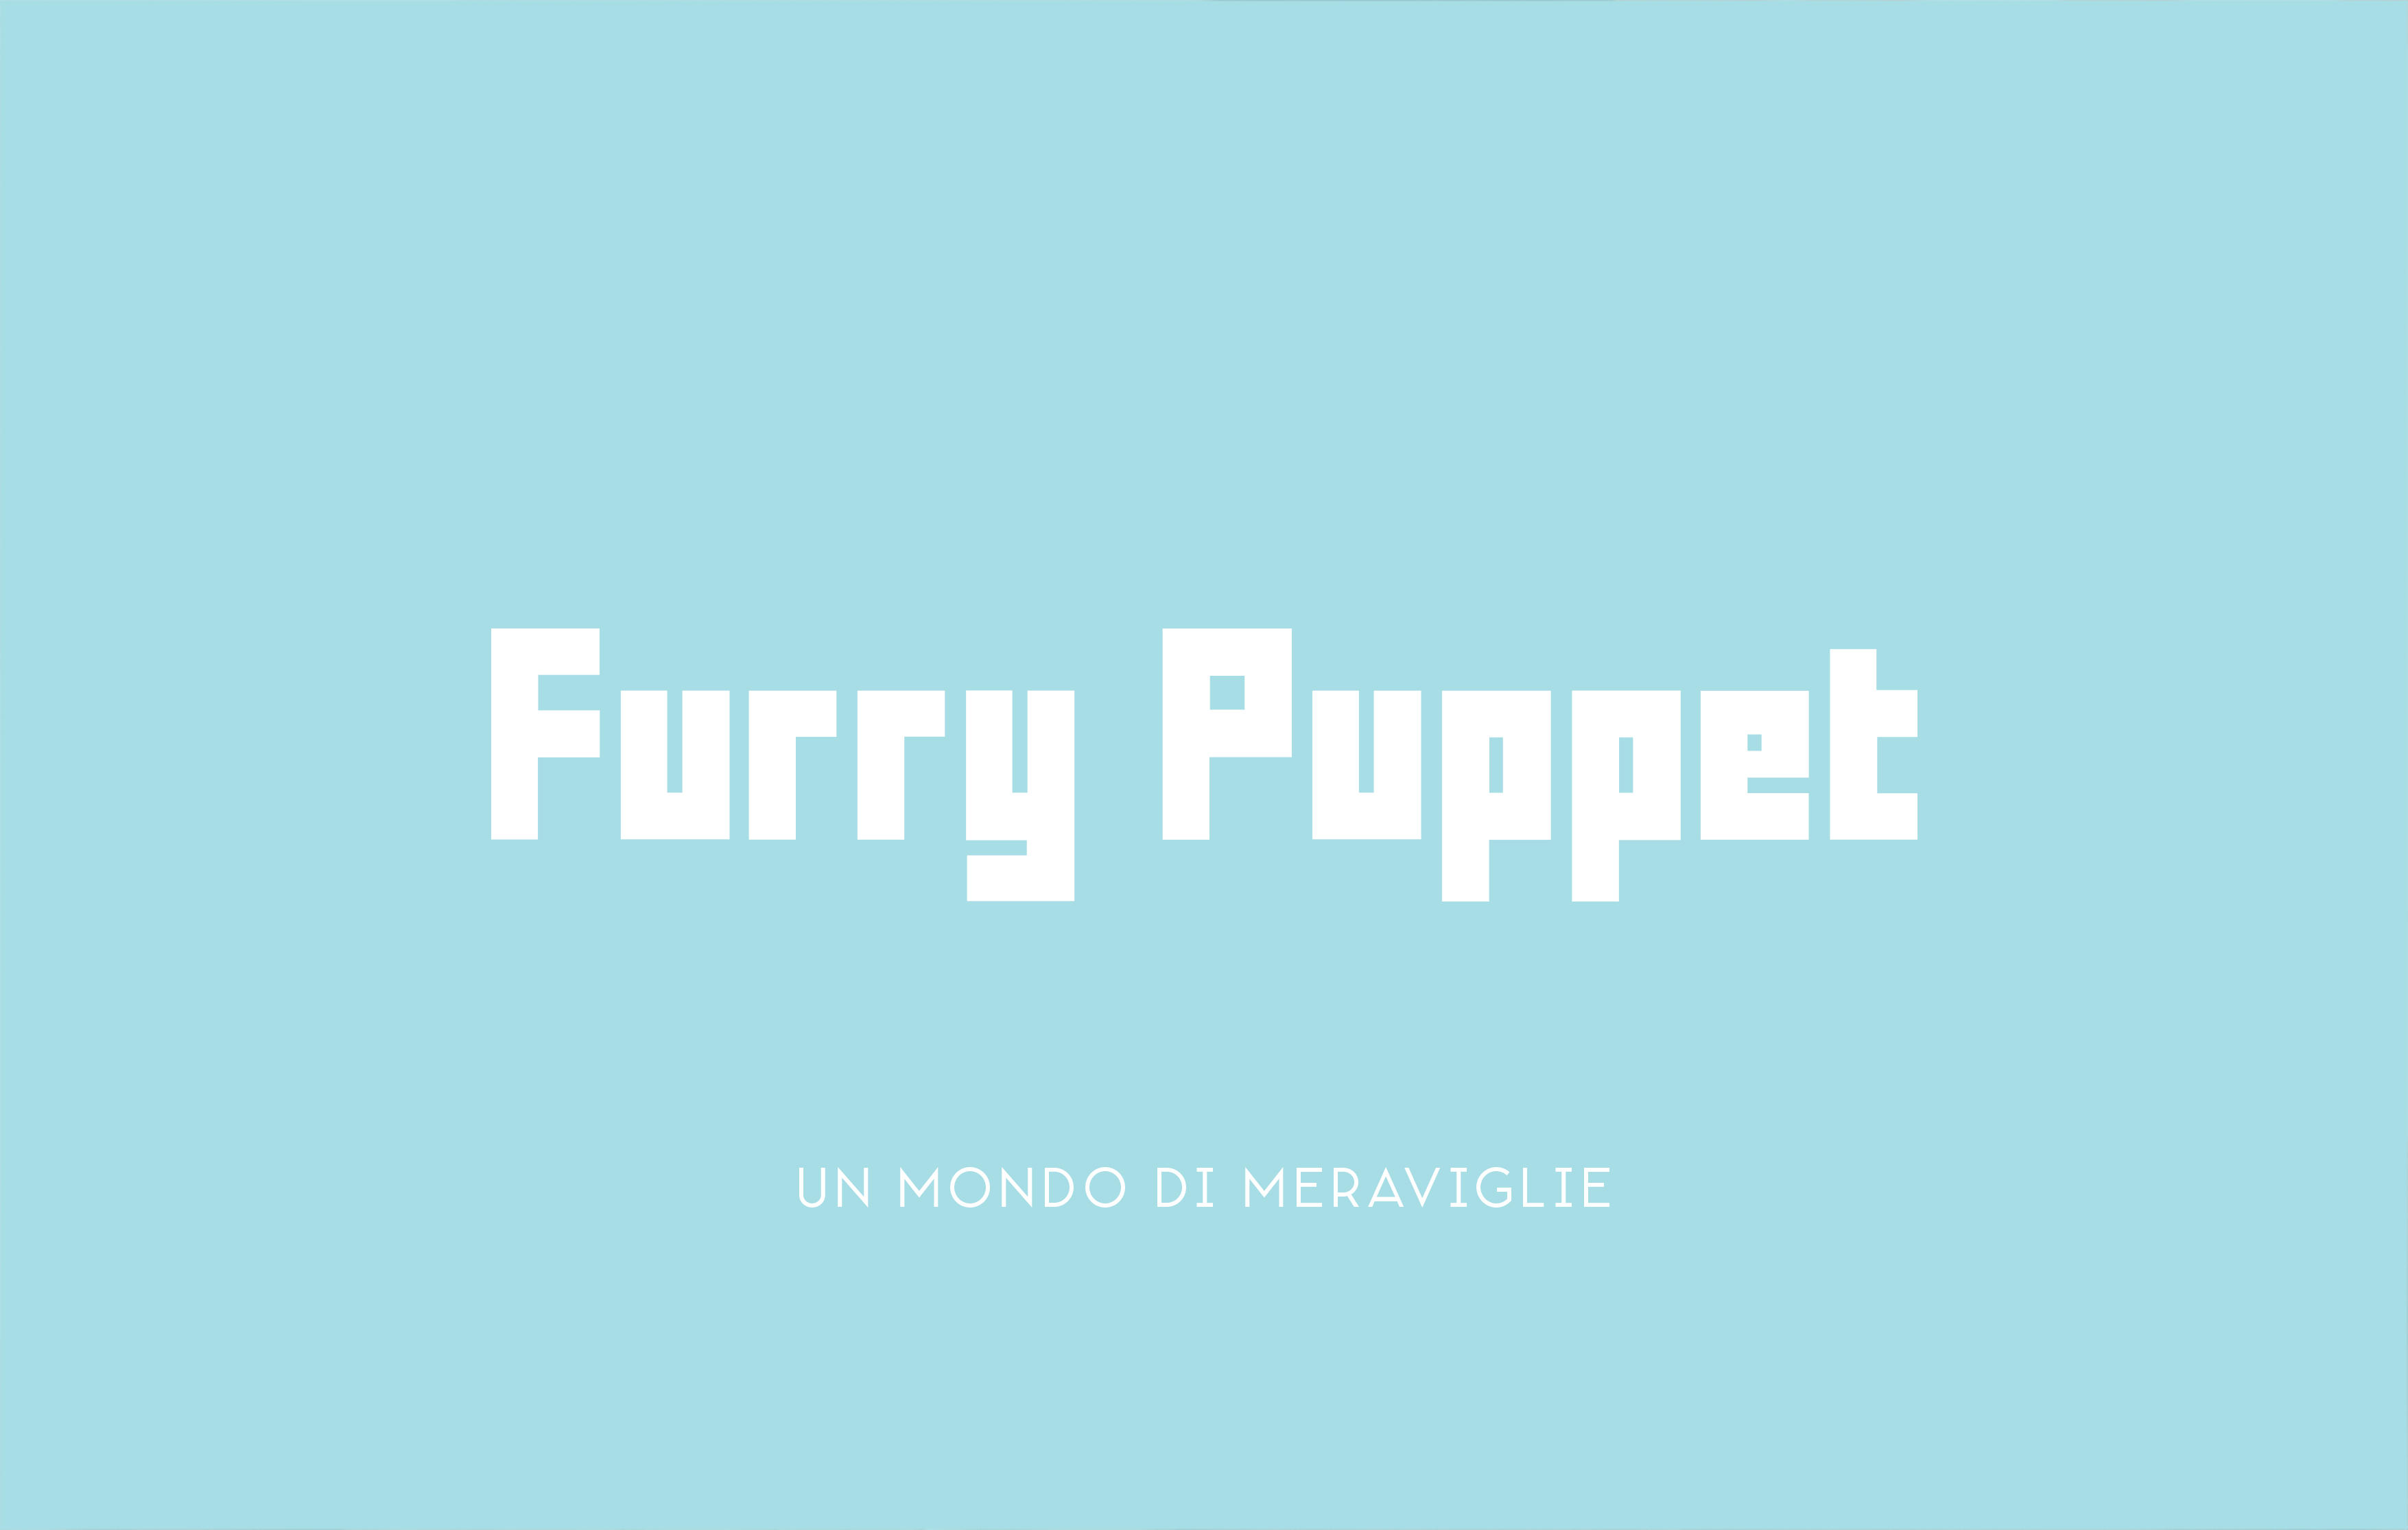 Logo di Furry Puppet con lo slogan 'Un mondo di meraviglie'